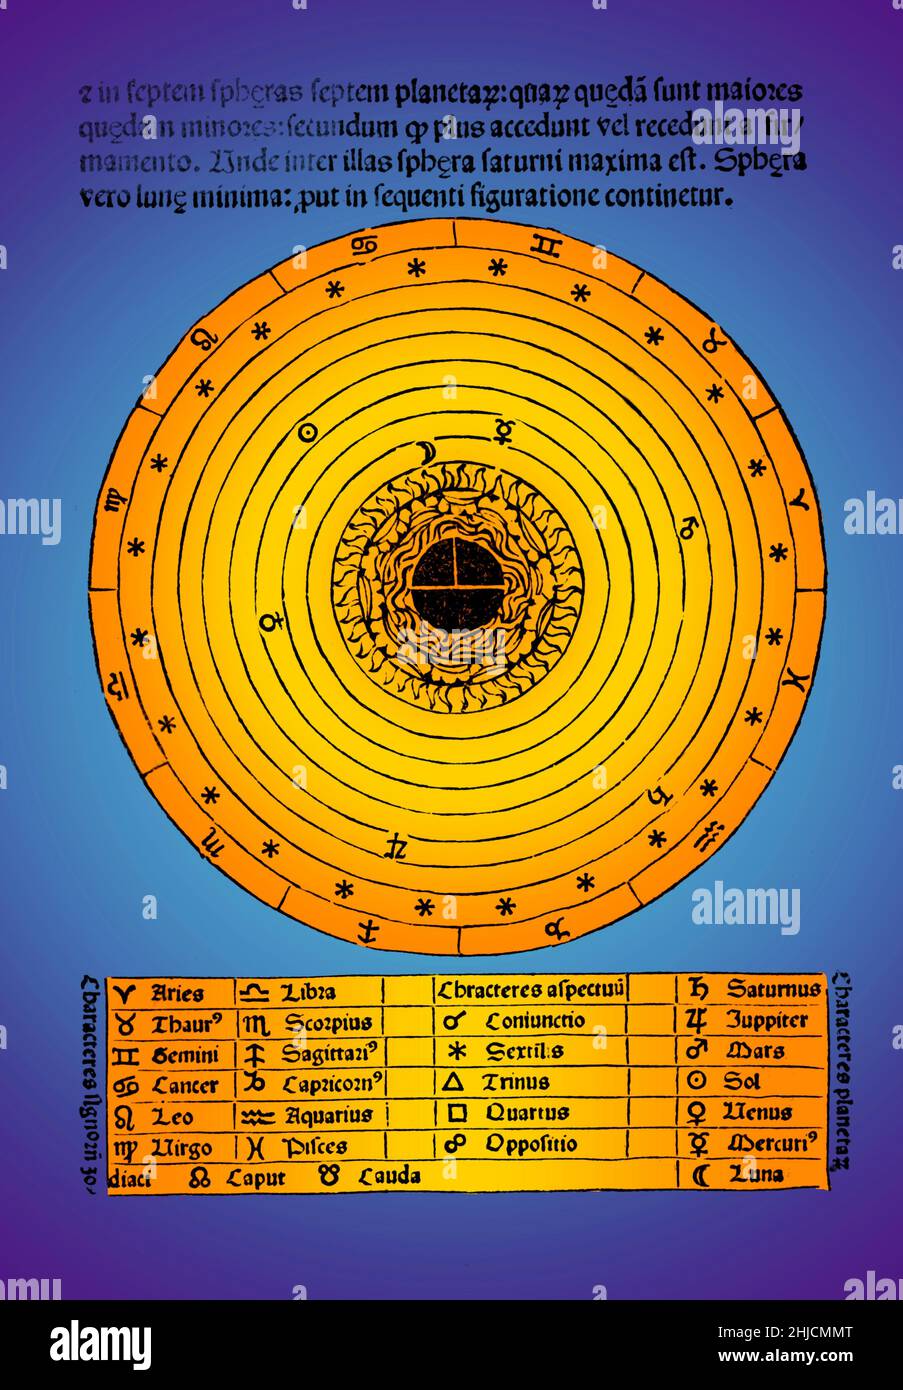 Rappresentazione schematica colorata del cosmo di 'De sphaera mundi', un'introduzione medievale agli elementi di base dell'astronomia scritta da Johannes de Sacrobosco, circa nel 1230. Sette cerchi concentrici rappresentano le orbite della luna, dei pianeti e del sole. Foto Stock